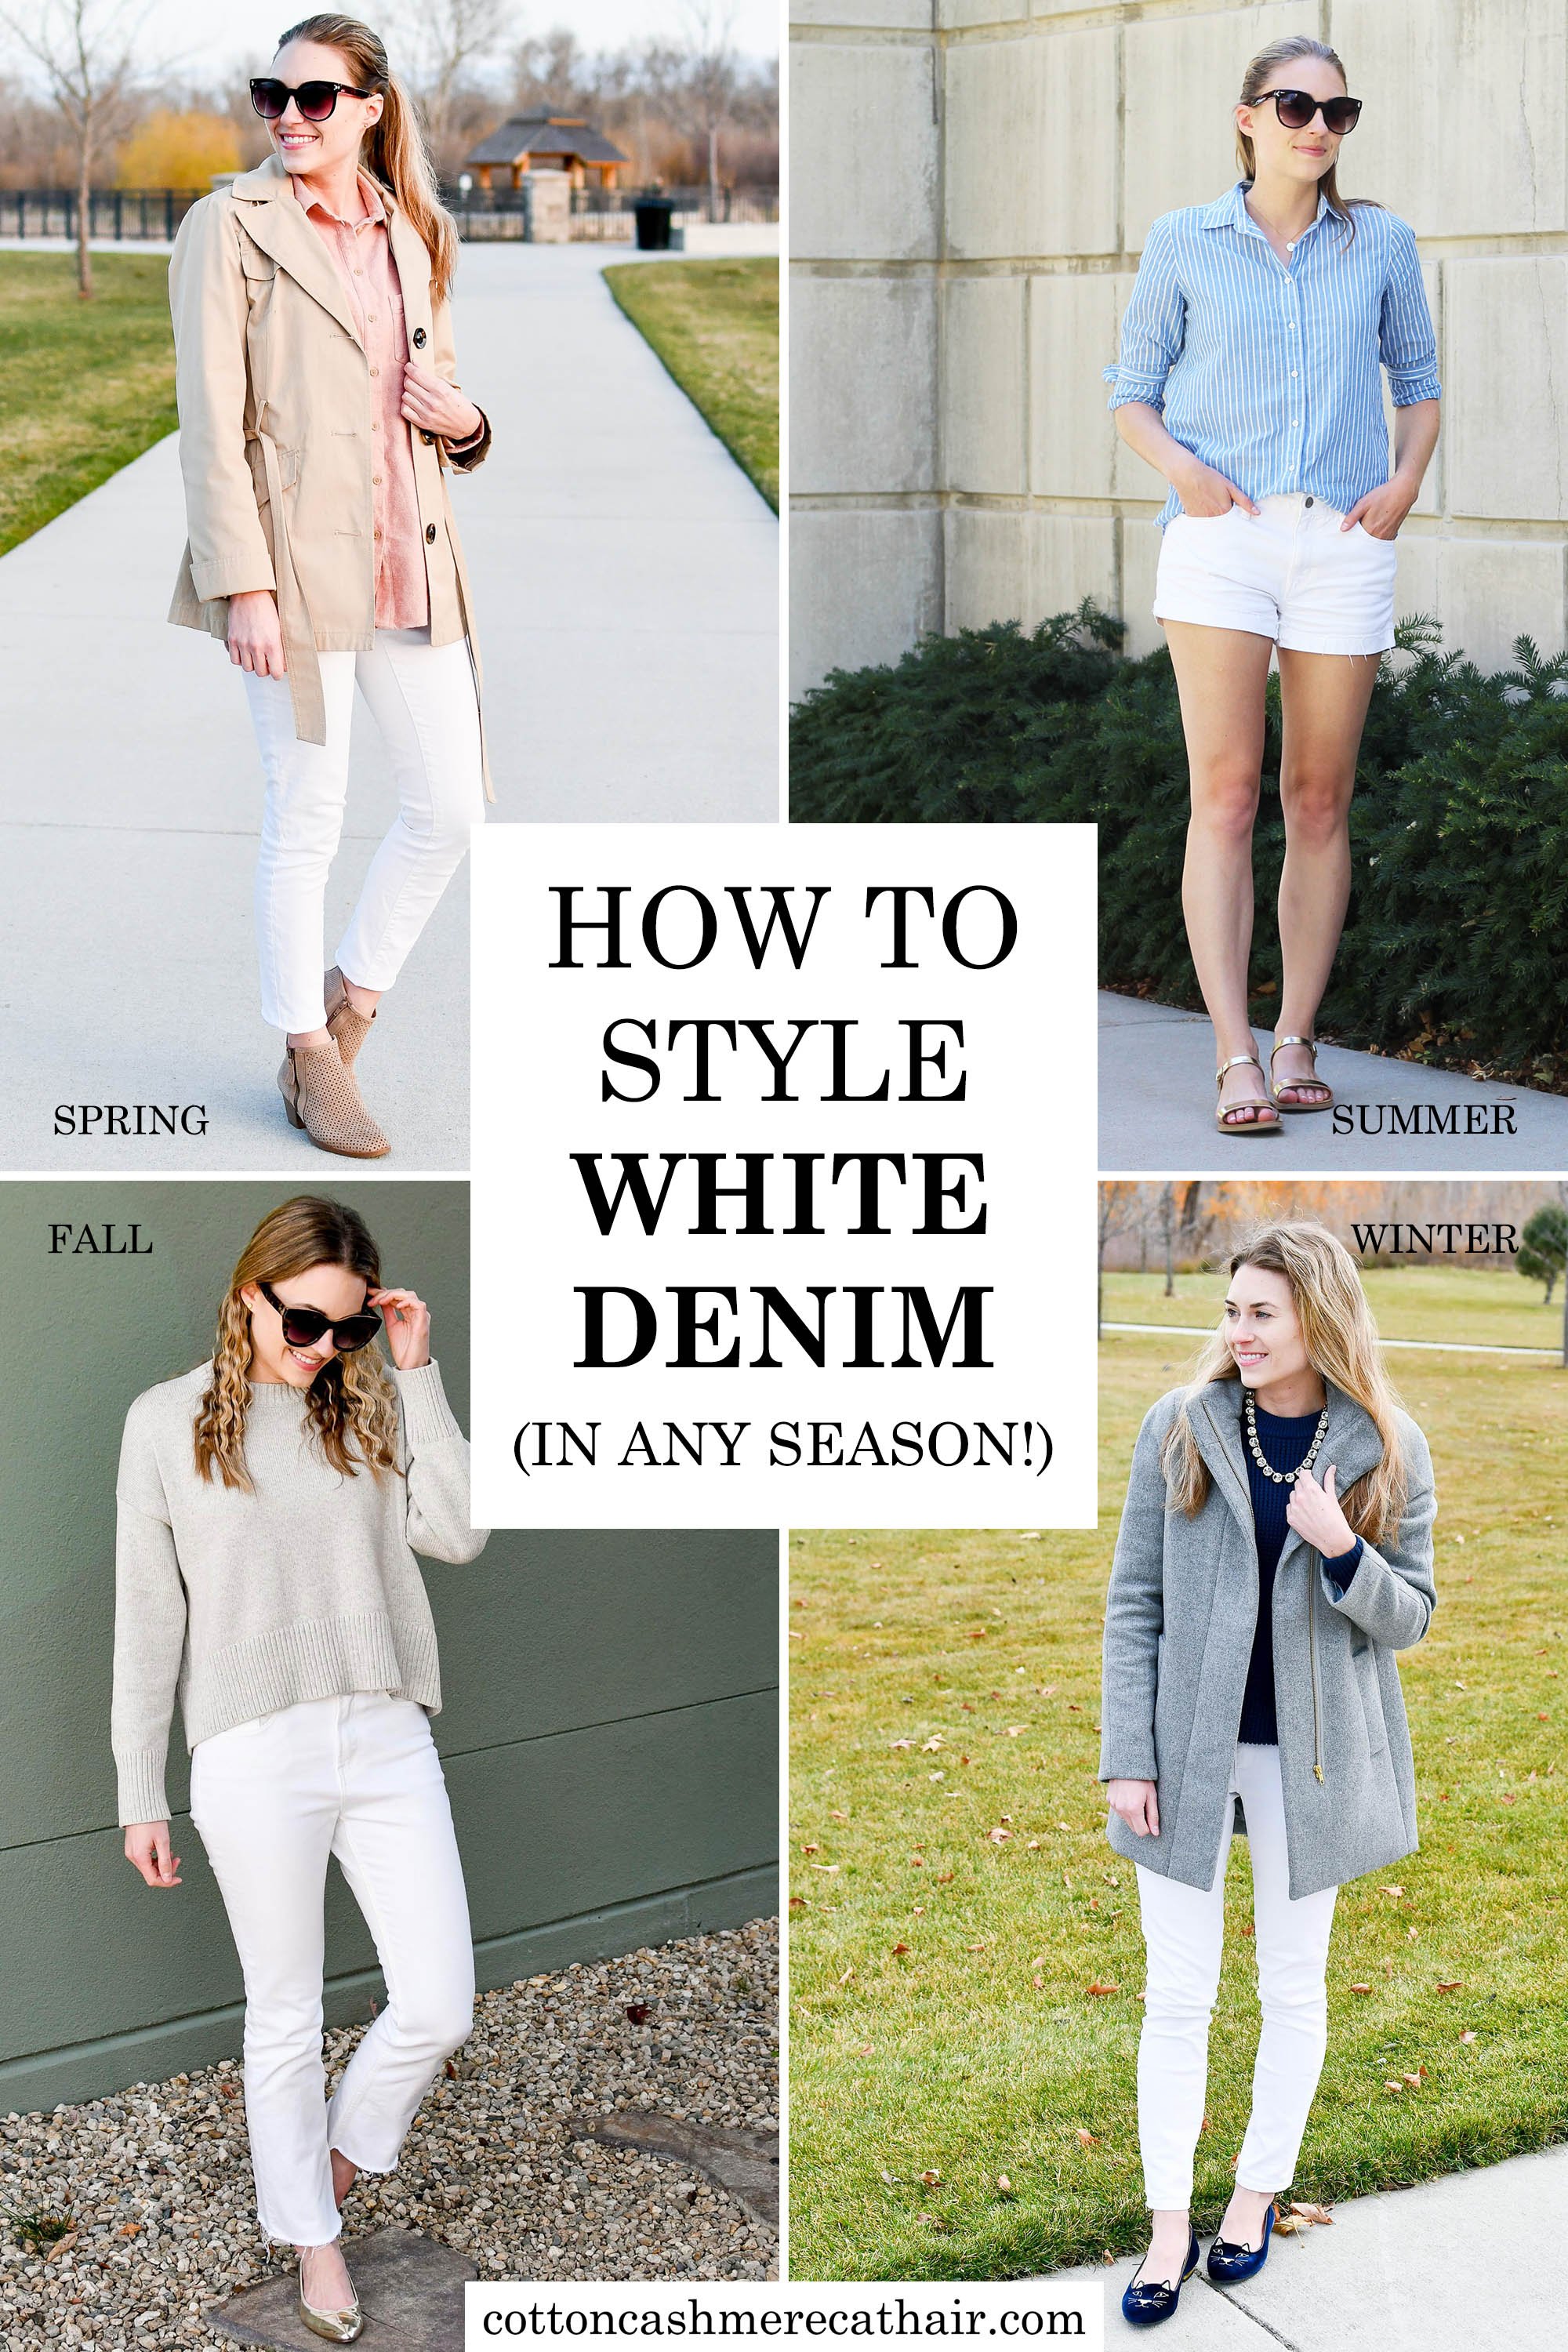 https://images.squarespace-cdn.com/content/v1/551c15cae4b07646122e7048/f3869659-9818-44a2-b2ea-83705b6c3749/How+to+style+white+denim+in+any+season+%7C+white+jeans+outfit+ideas+%7C+Cotton+Cashmere+Cat+Hair